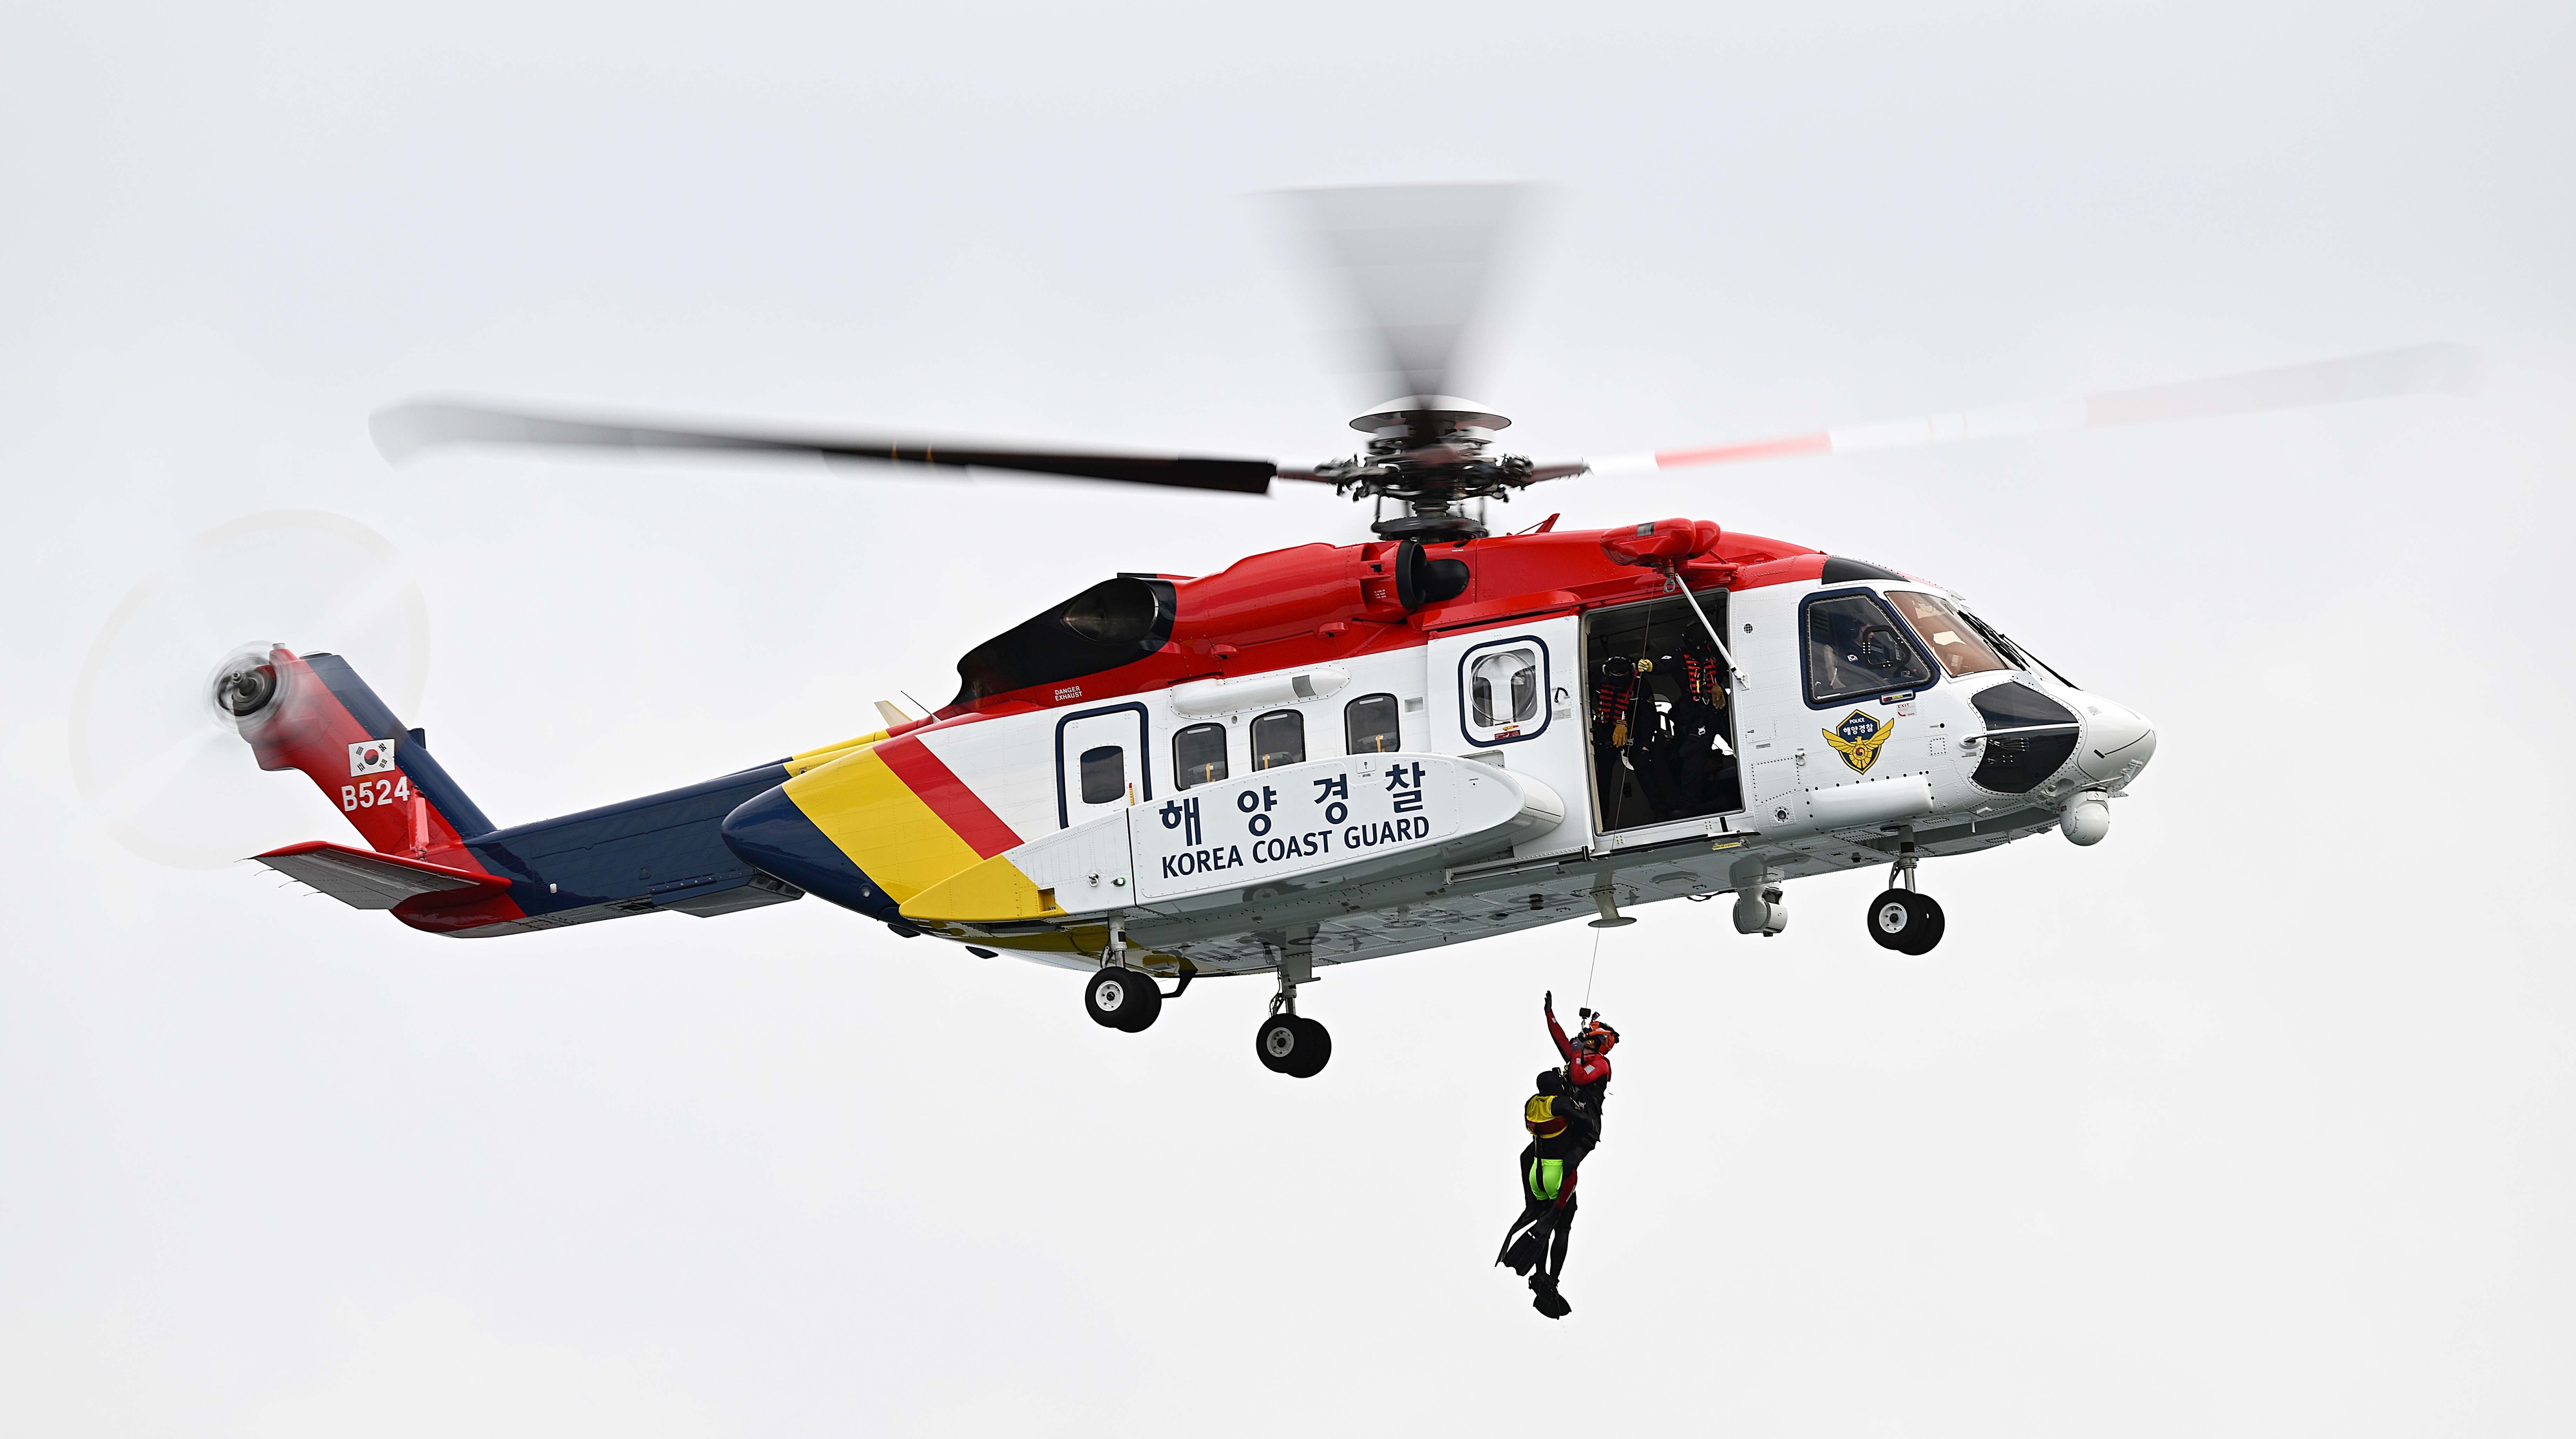 해경의 헬기 S-92호에서 줄을 타고 내려온 대원이 전복된 영덕호에서 탈출해 표류 중이던 선원을 구조하고 있다.